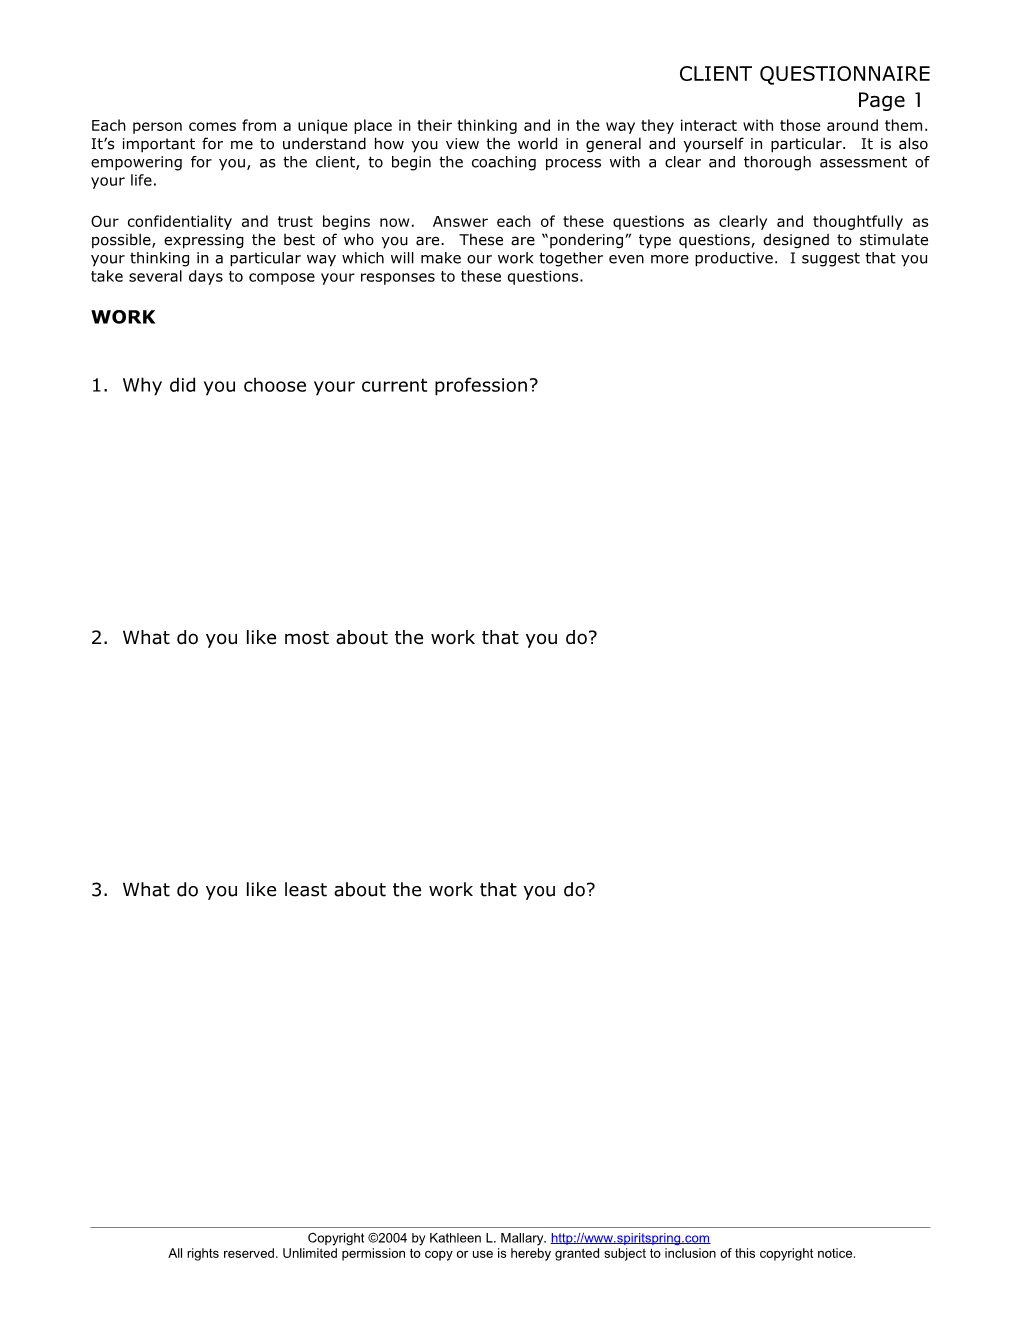 Pre-Coaching Questionnaire